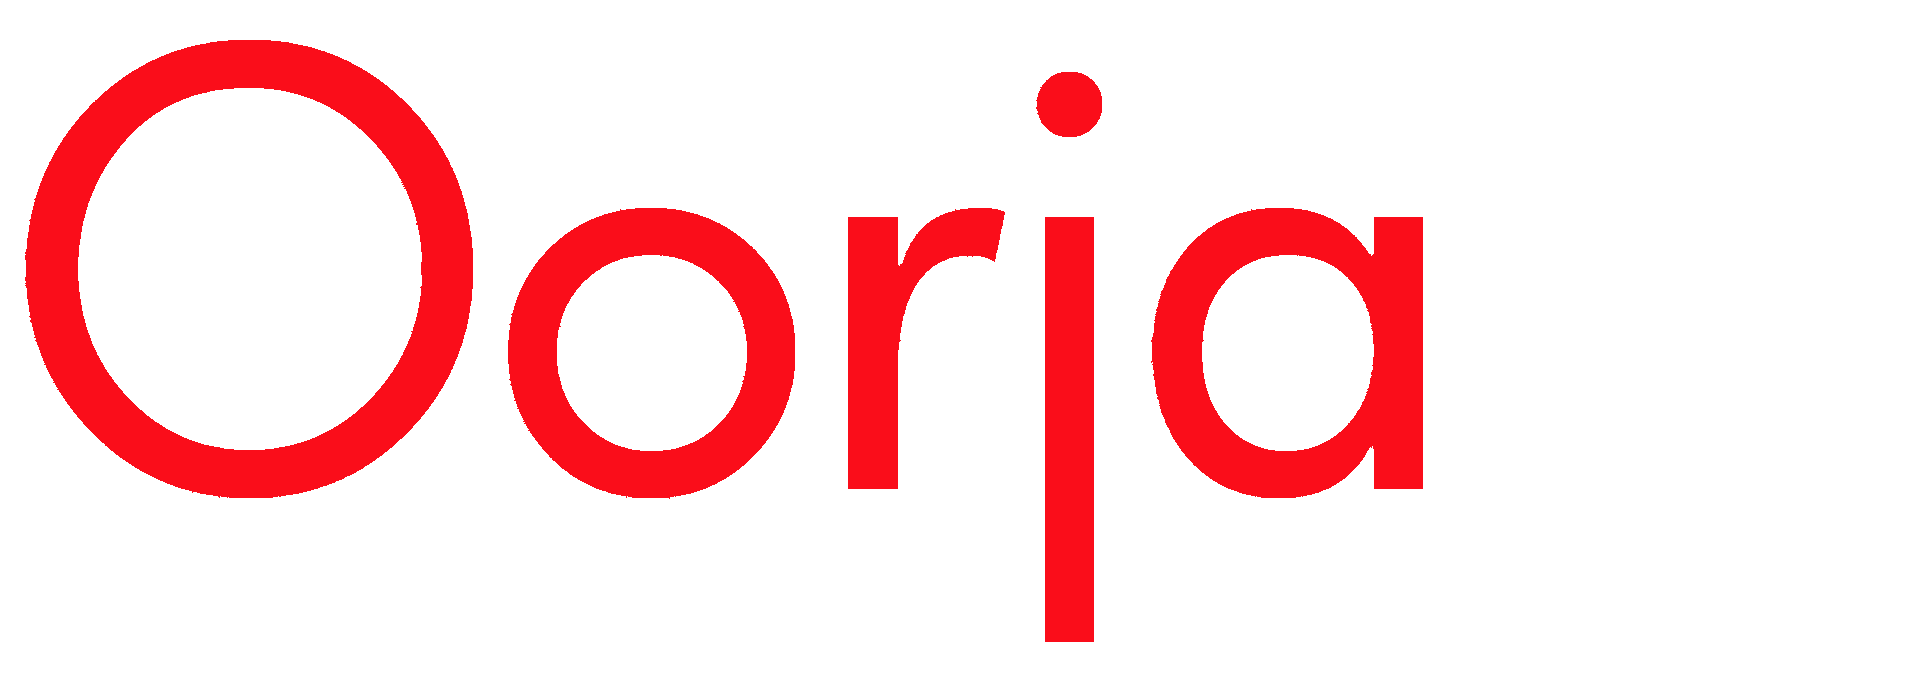 Oorja - energy engineering